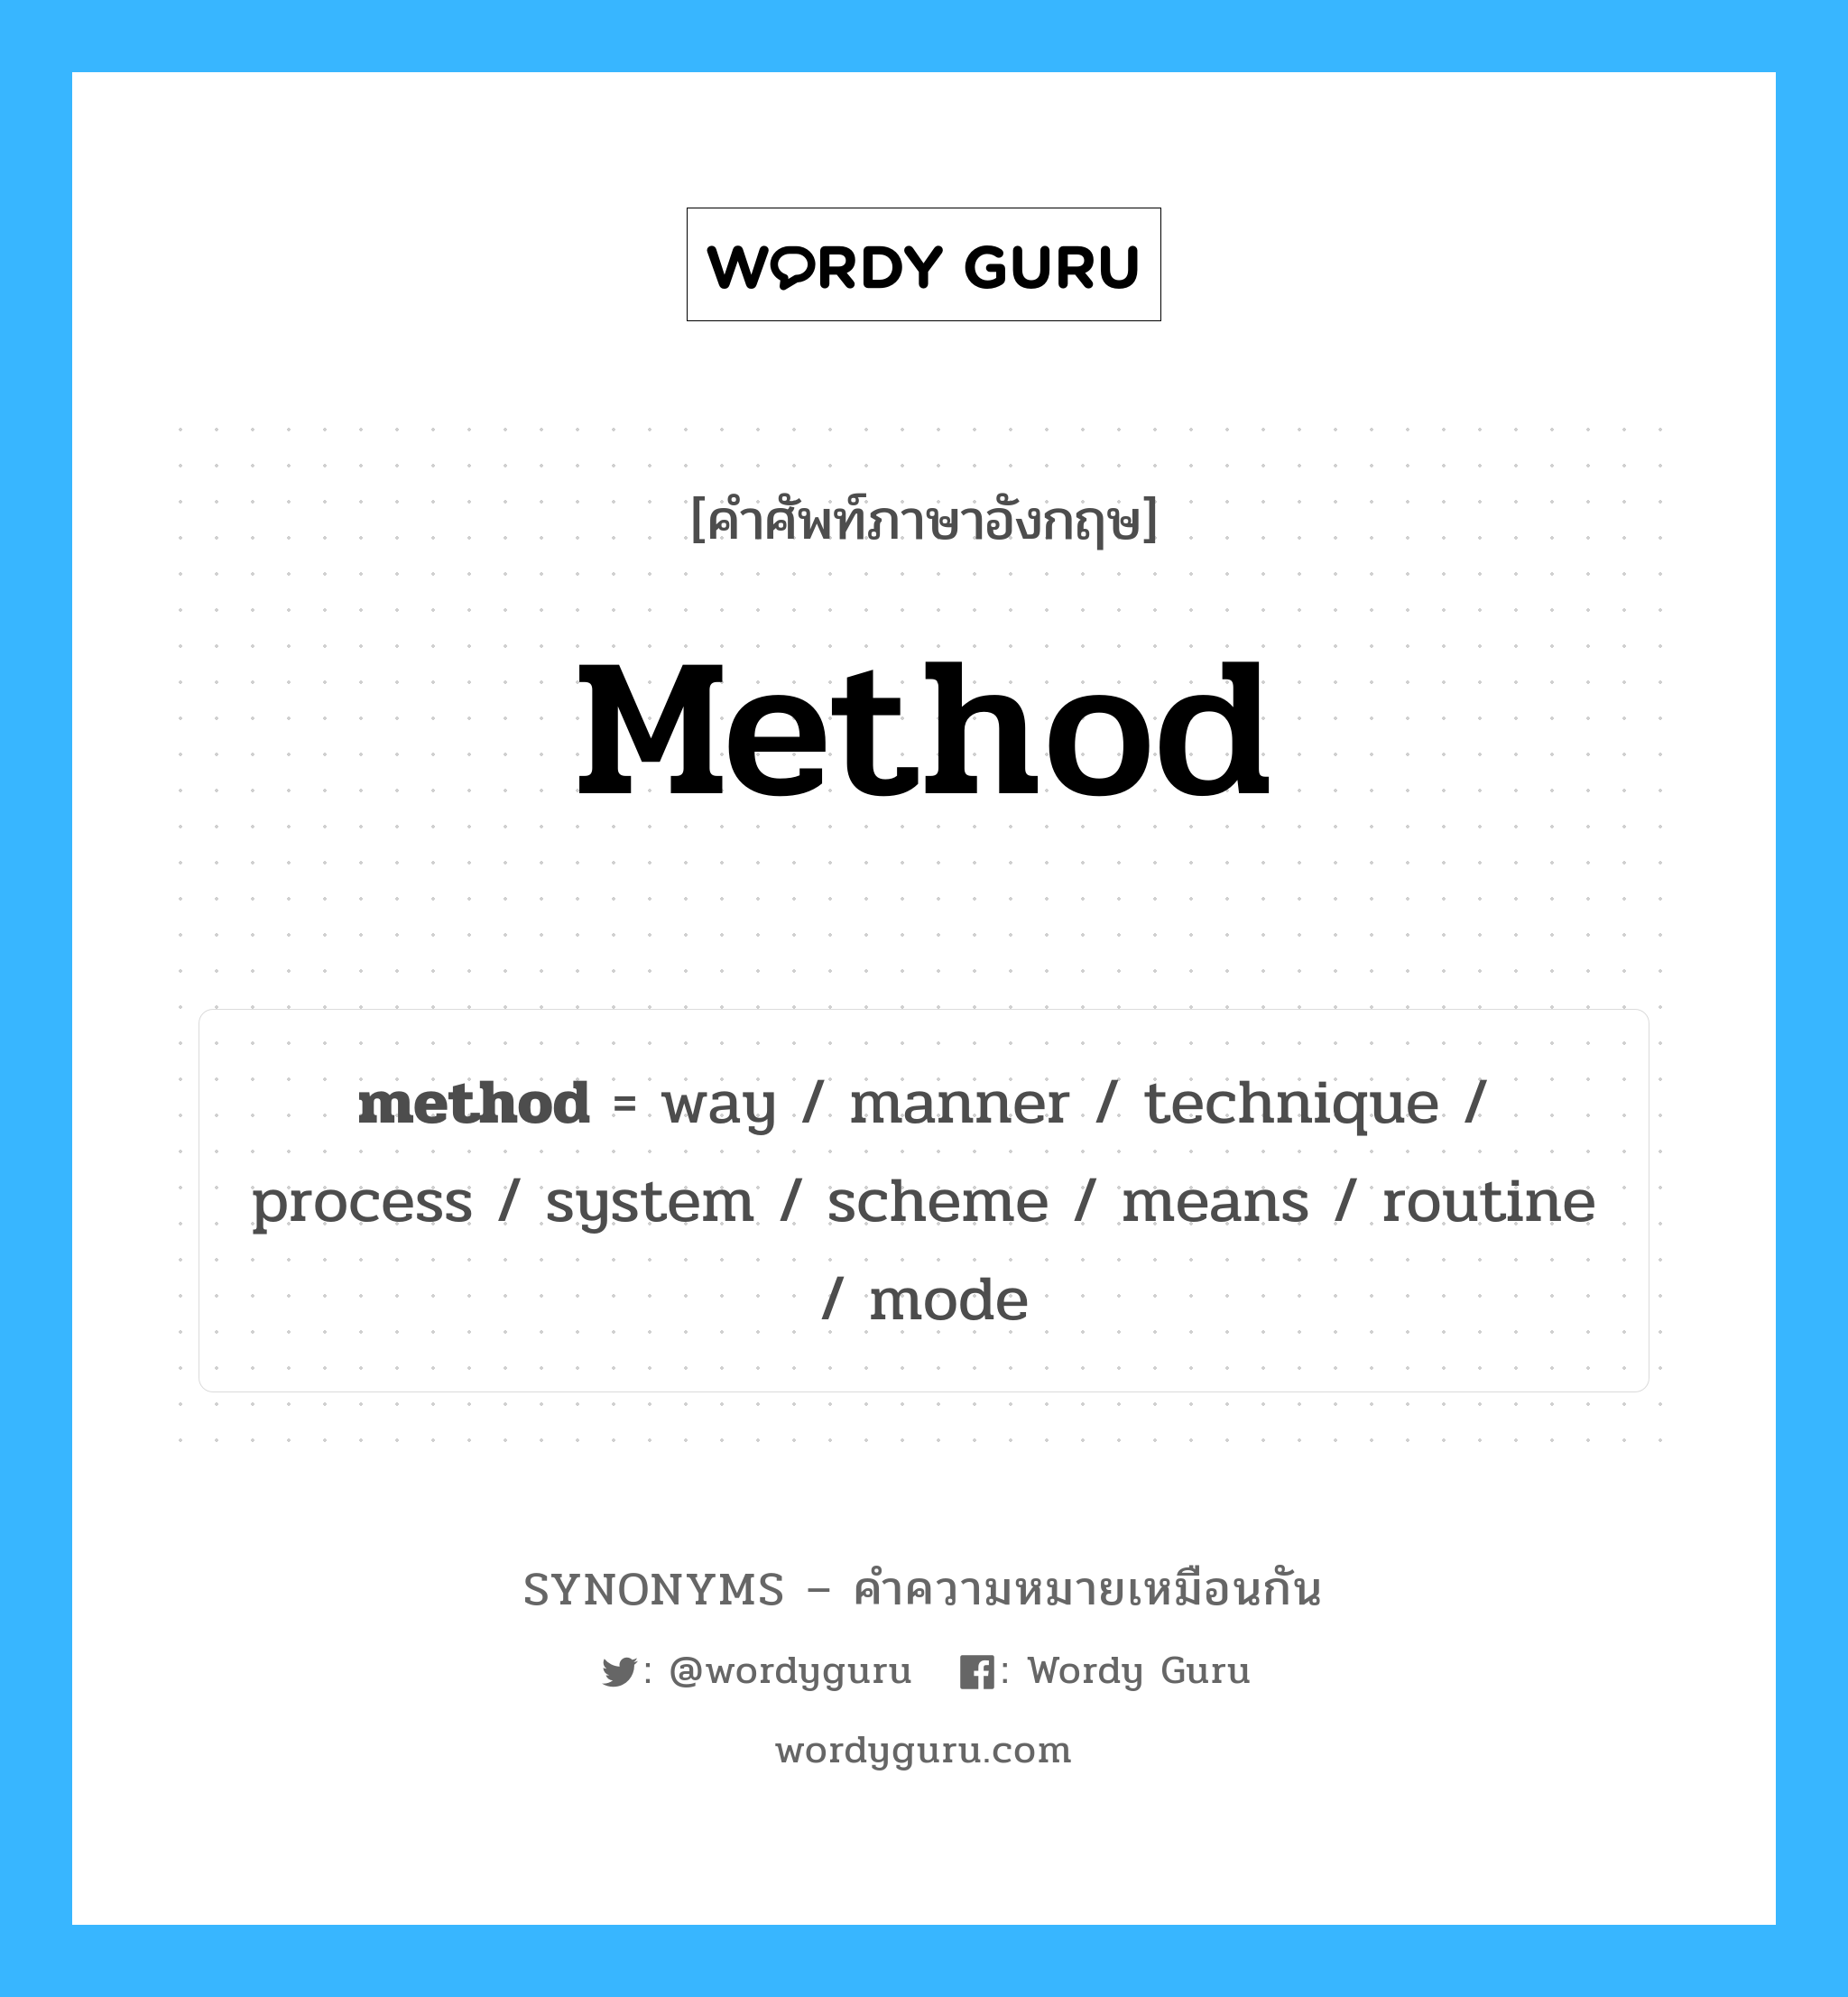 system เป็นหนึ่งใน method และมีคำอื่น ๆ อีกดังนี้, คำศัพท์ภาษาอังกฤษ system ความหมายคล้ายกันกับ method แปลว่า ระบบ หมวด method